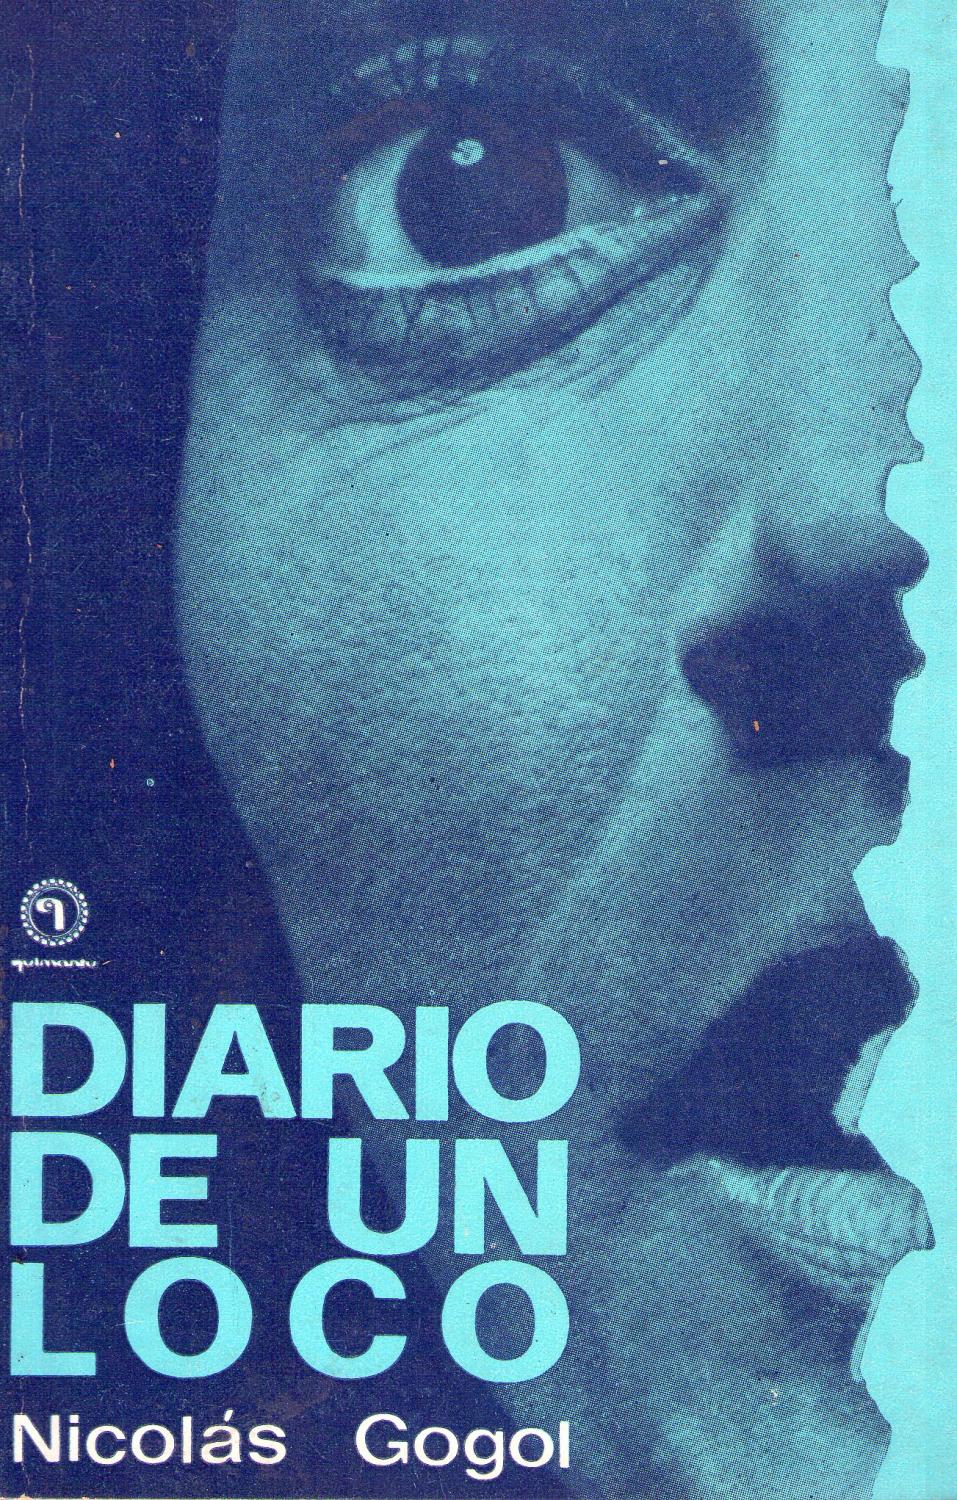 Diario de un loco - Gogol (Quimantú para todos/Quimantú) (image)